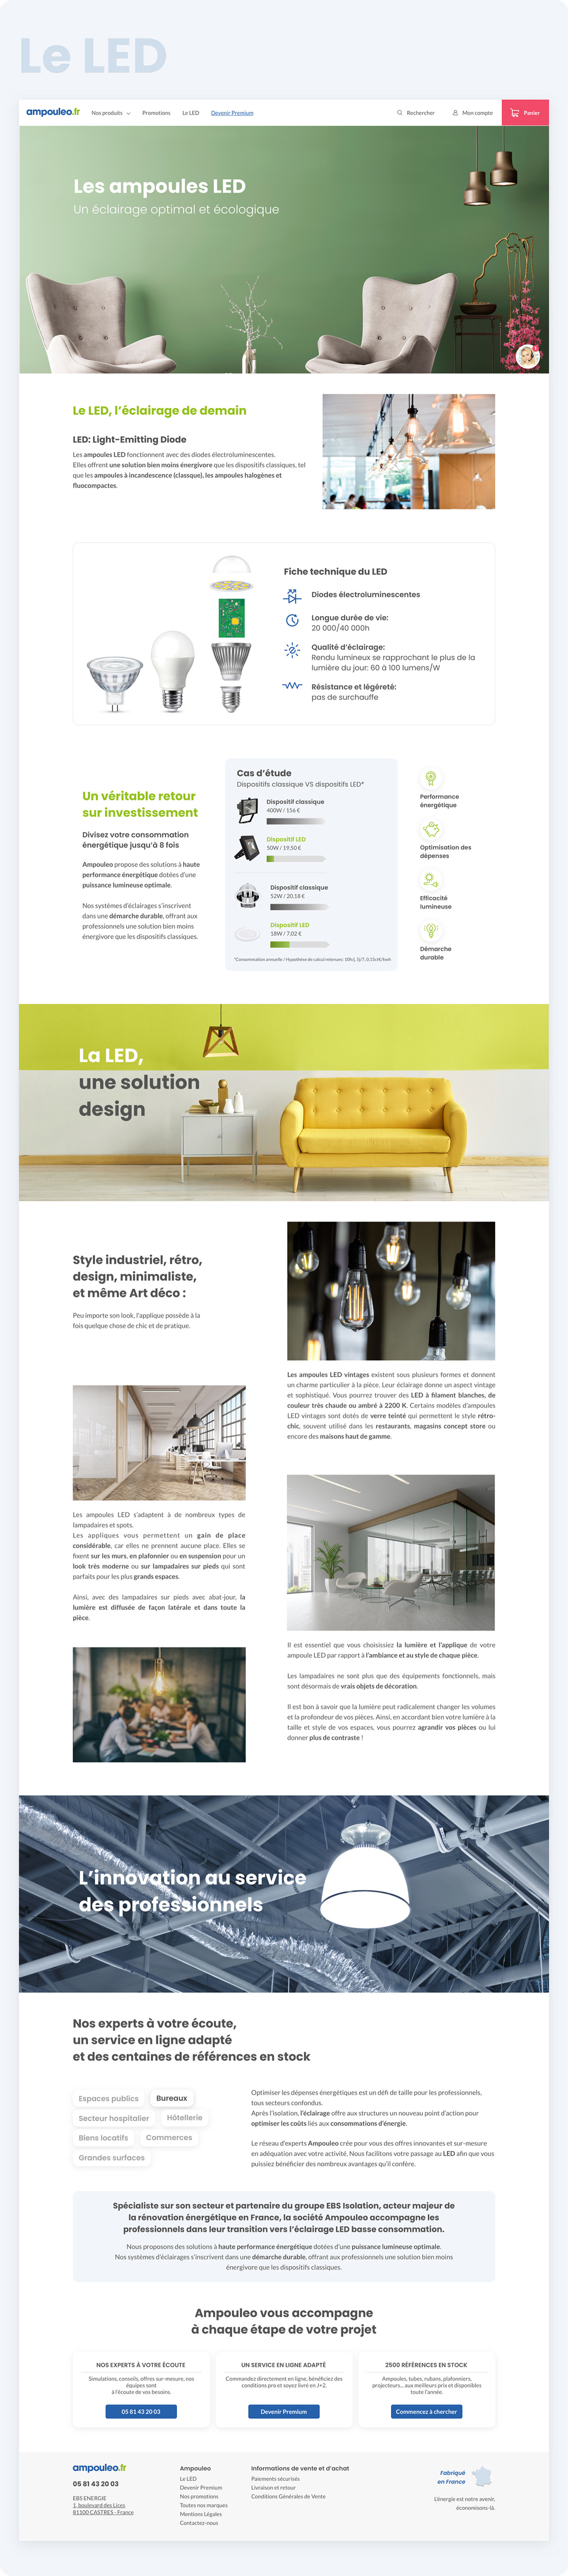 ampoule e-commerce light shop sketch UI ux Webdesign